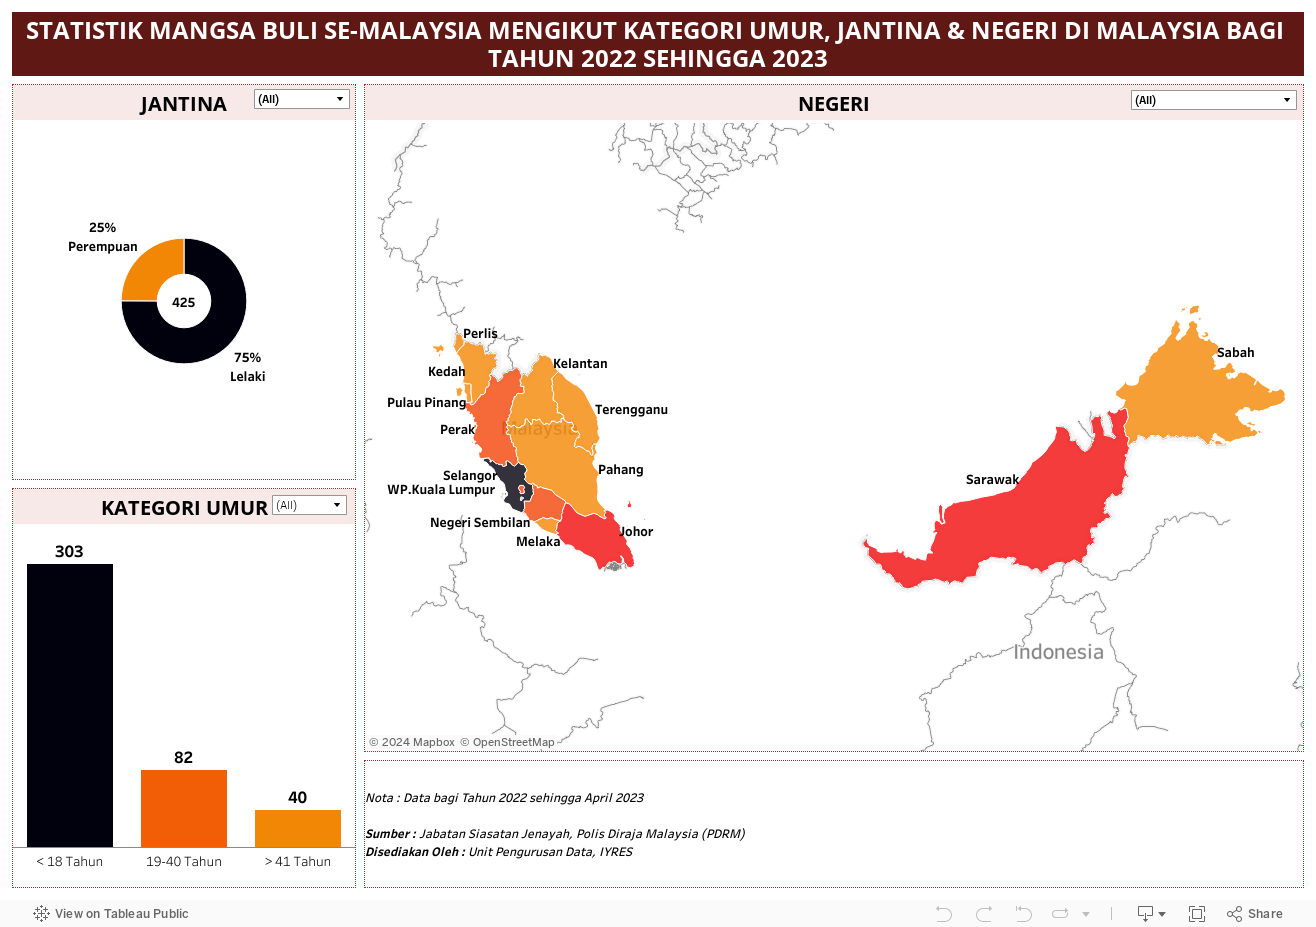 STATISTIK MANGSA BULI SE-MALAYSIA MENGIKUT KATEGORI UMUR, JANTINA & NEGERI DI MALAYSIA BAGI TAHUN 2022 SEHINGGA 2023 